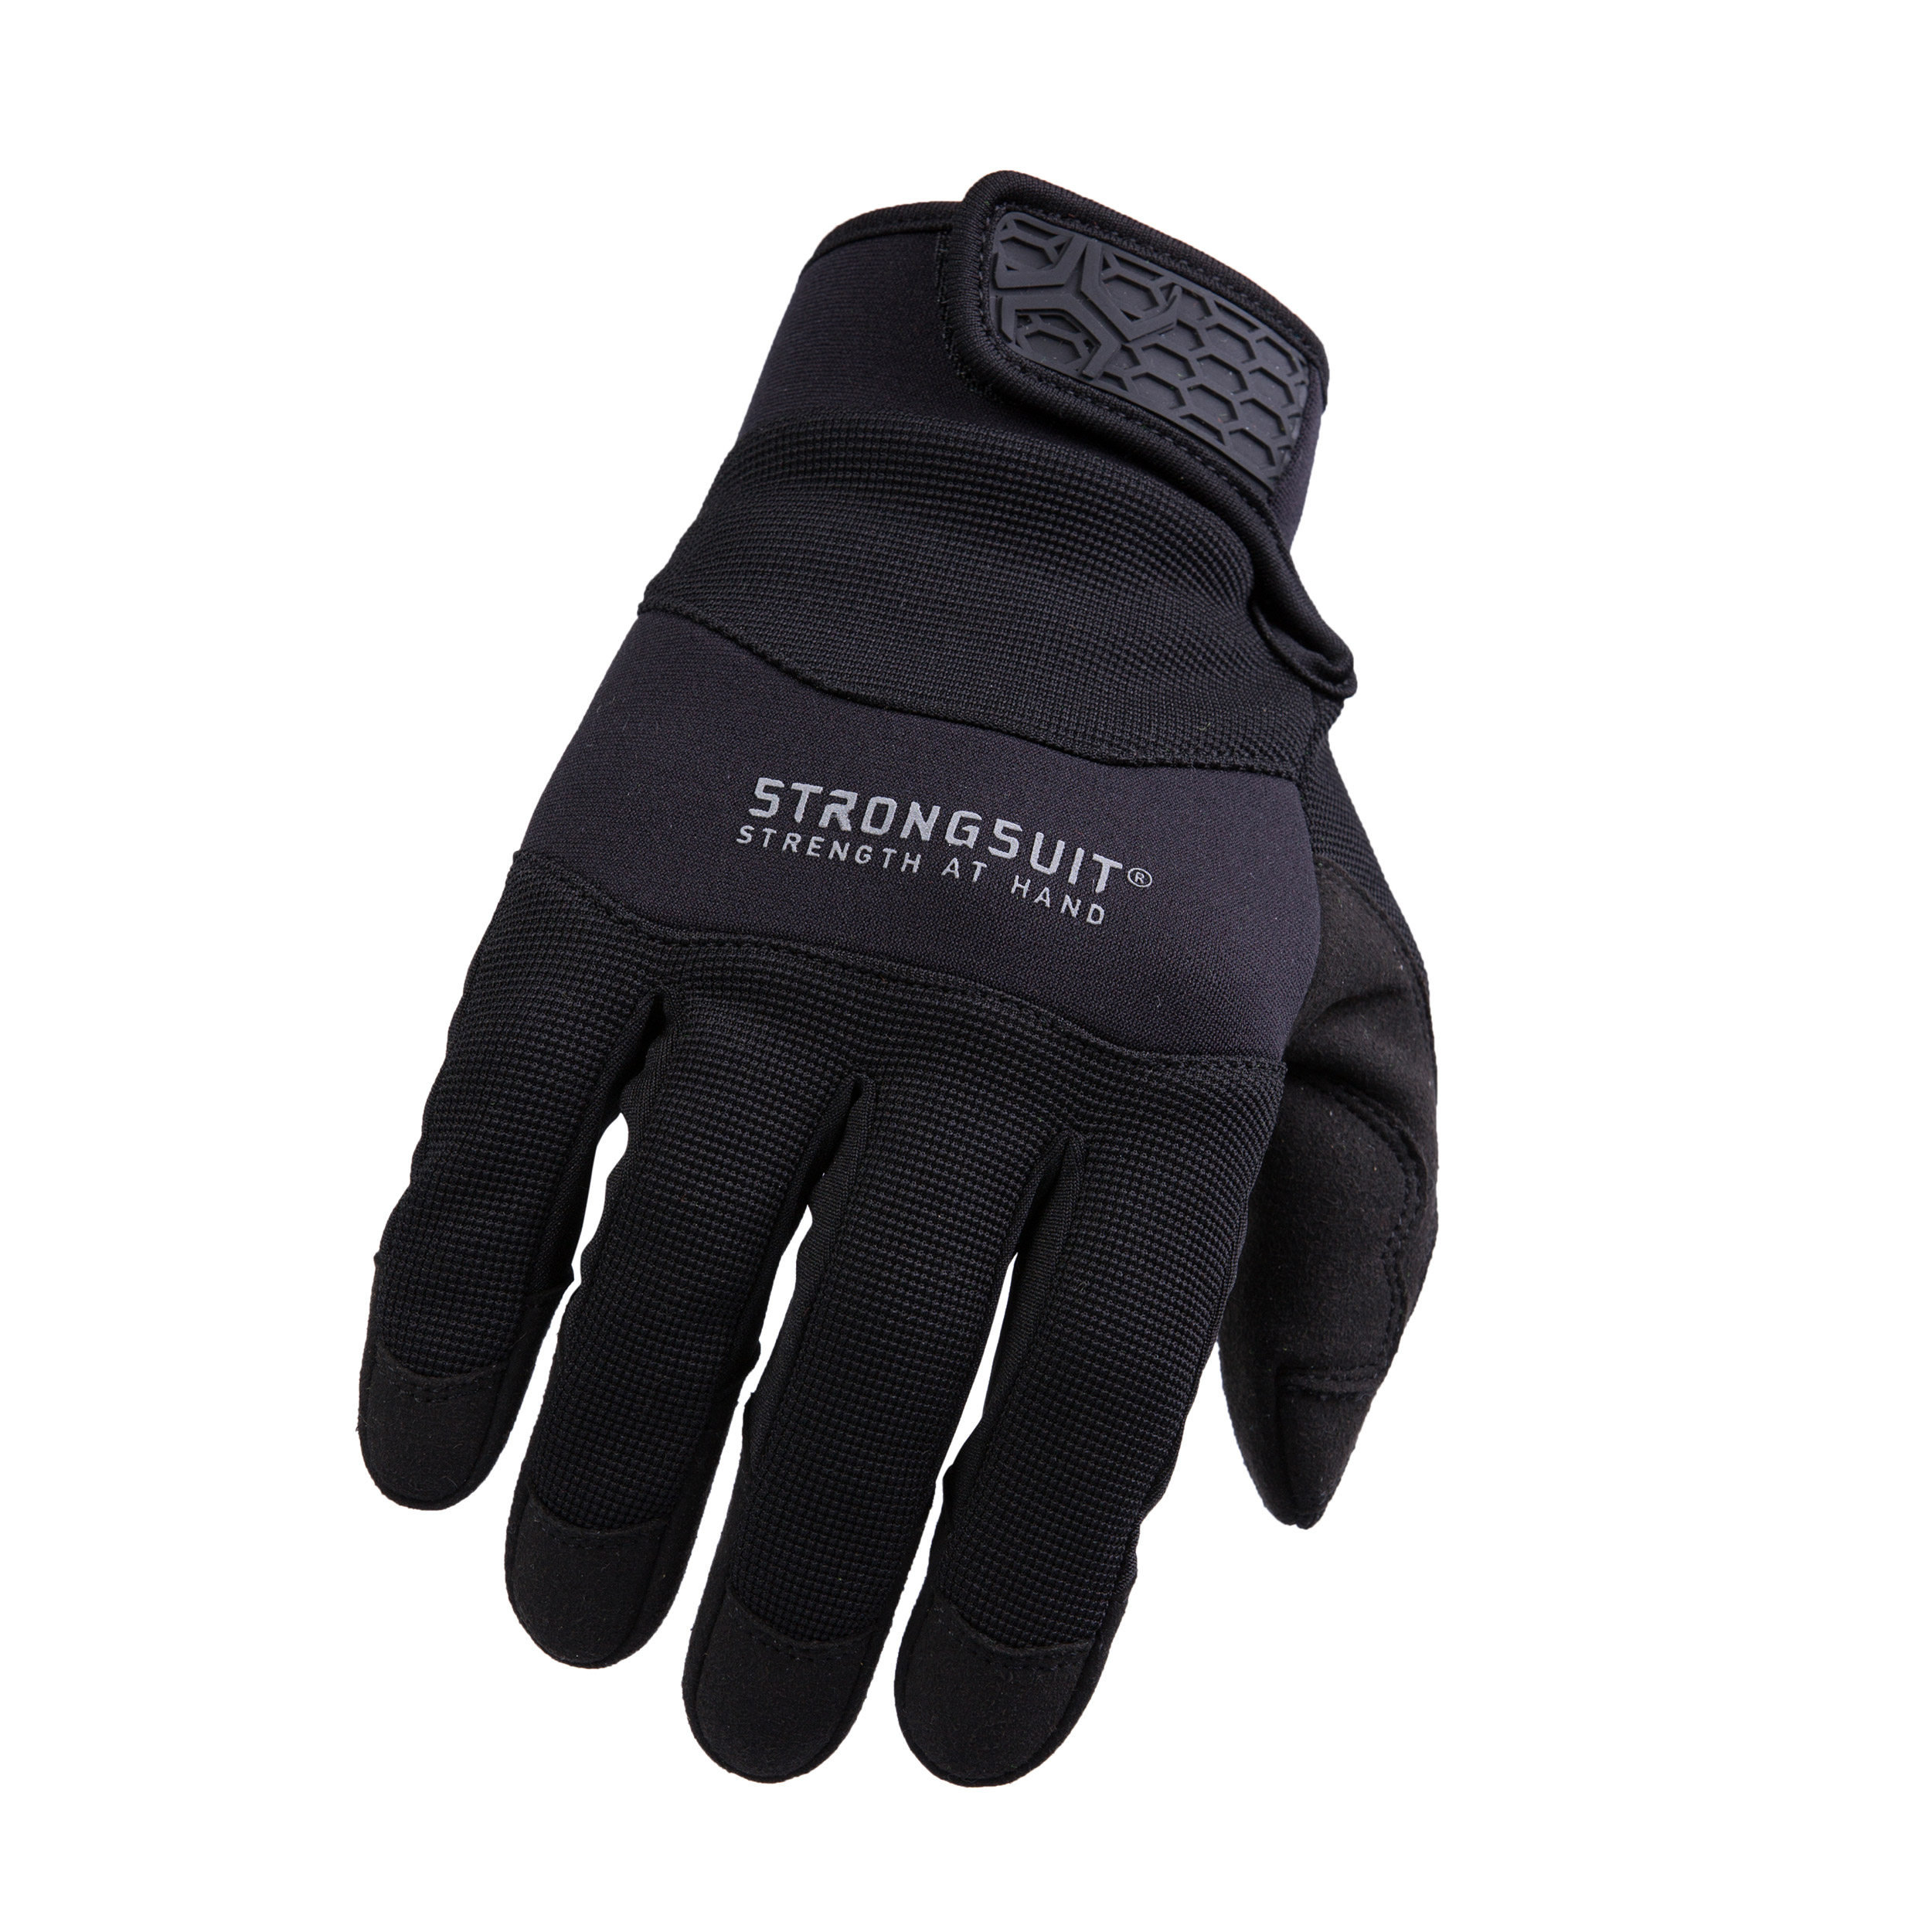 Armor3 Gloves Medium